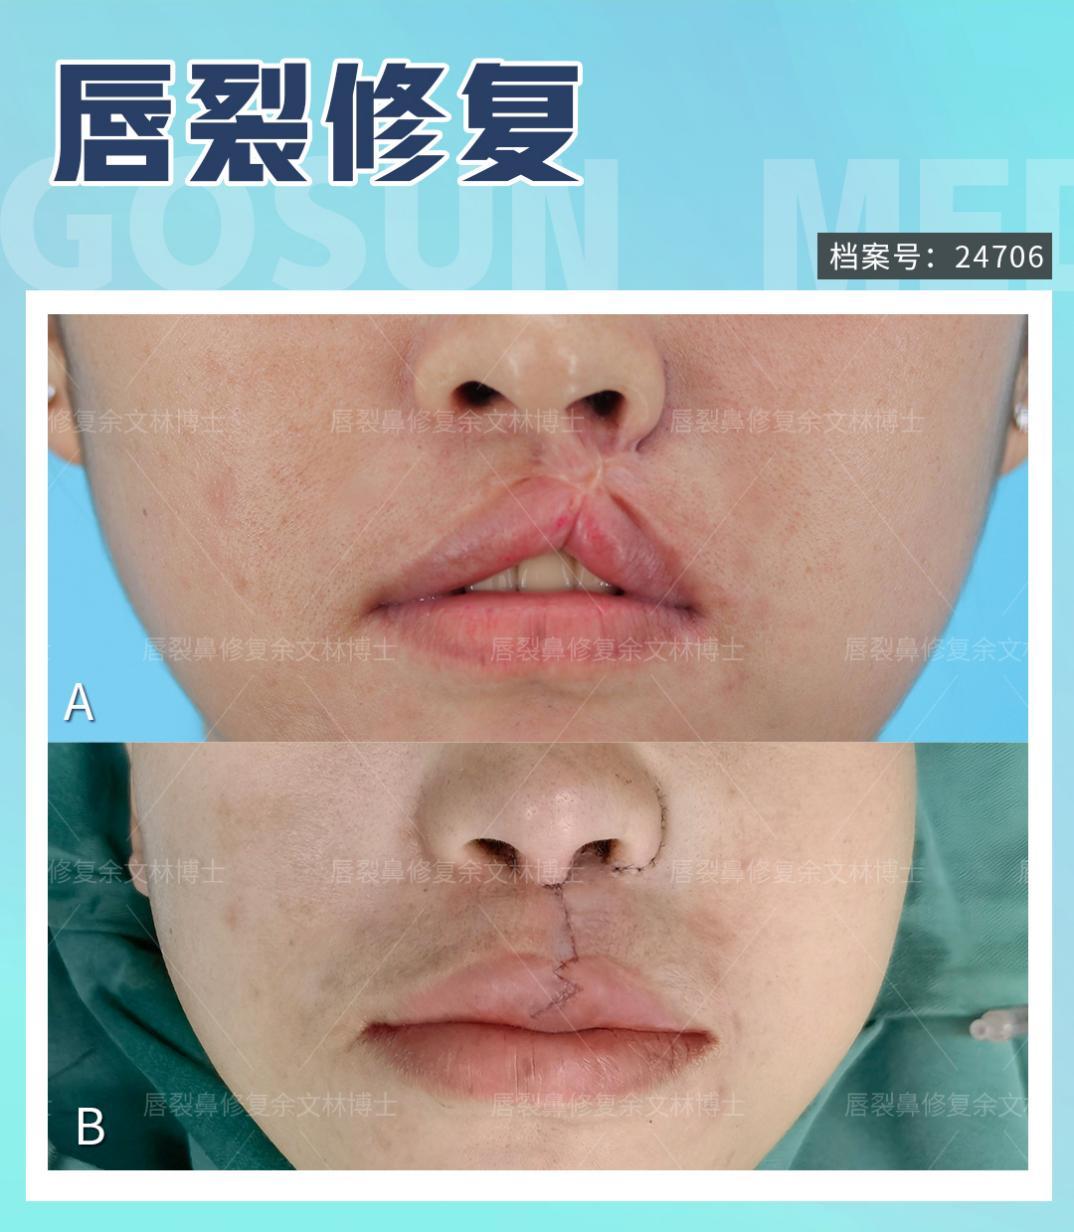 【案例分析】患者白唇疤痕挛缩,上唇跟着被提上去了